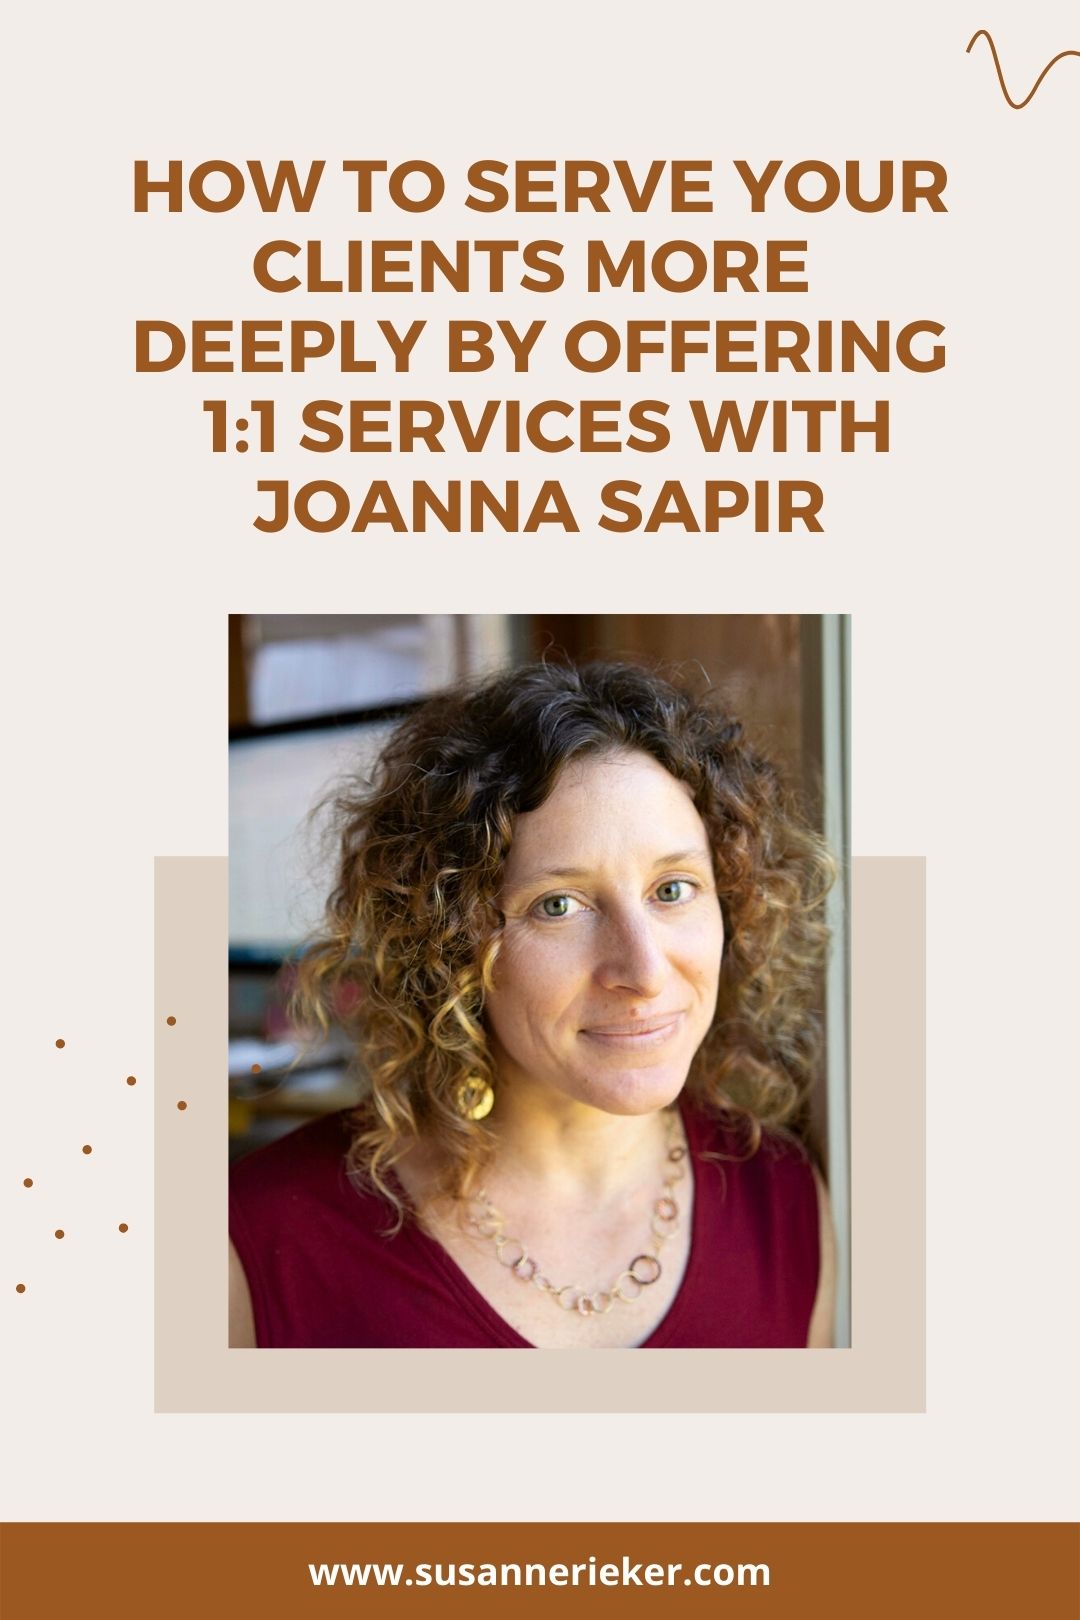 Joanna Sapir